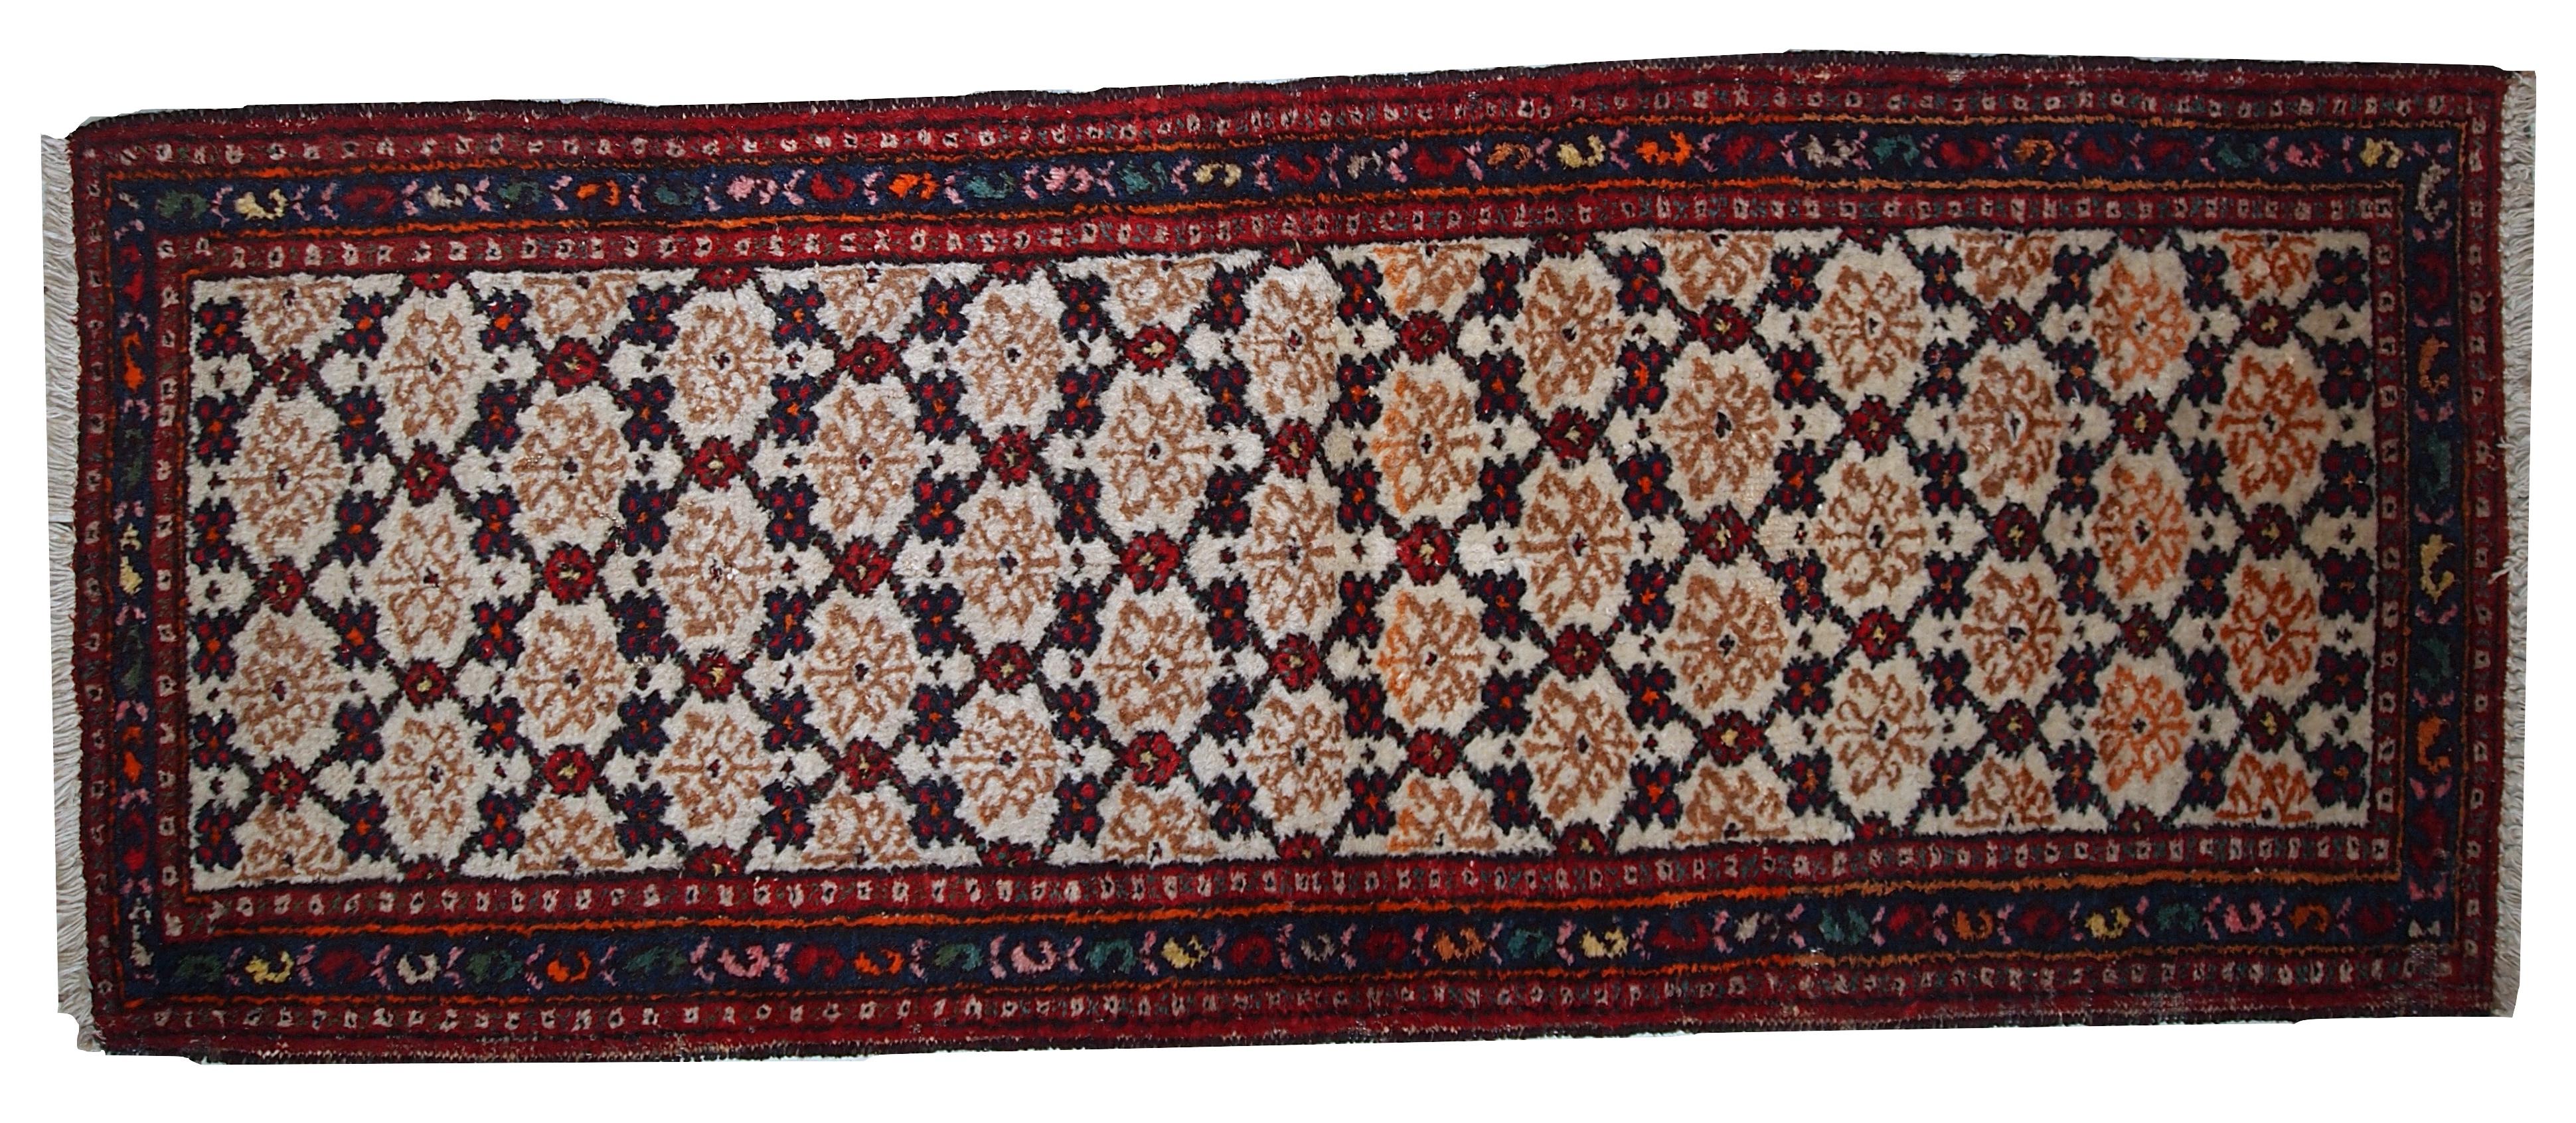 Antiker Hamadan-Läufer in gutem Originalzustand. Der Teppich ist in weißen, roten und blauen Farbtönen gehalten. Maße: 2.6' x 6,8' (80 cm x 207 cm).